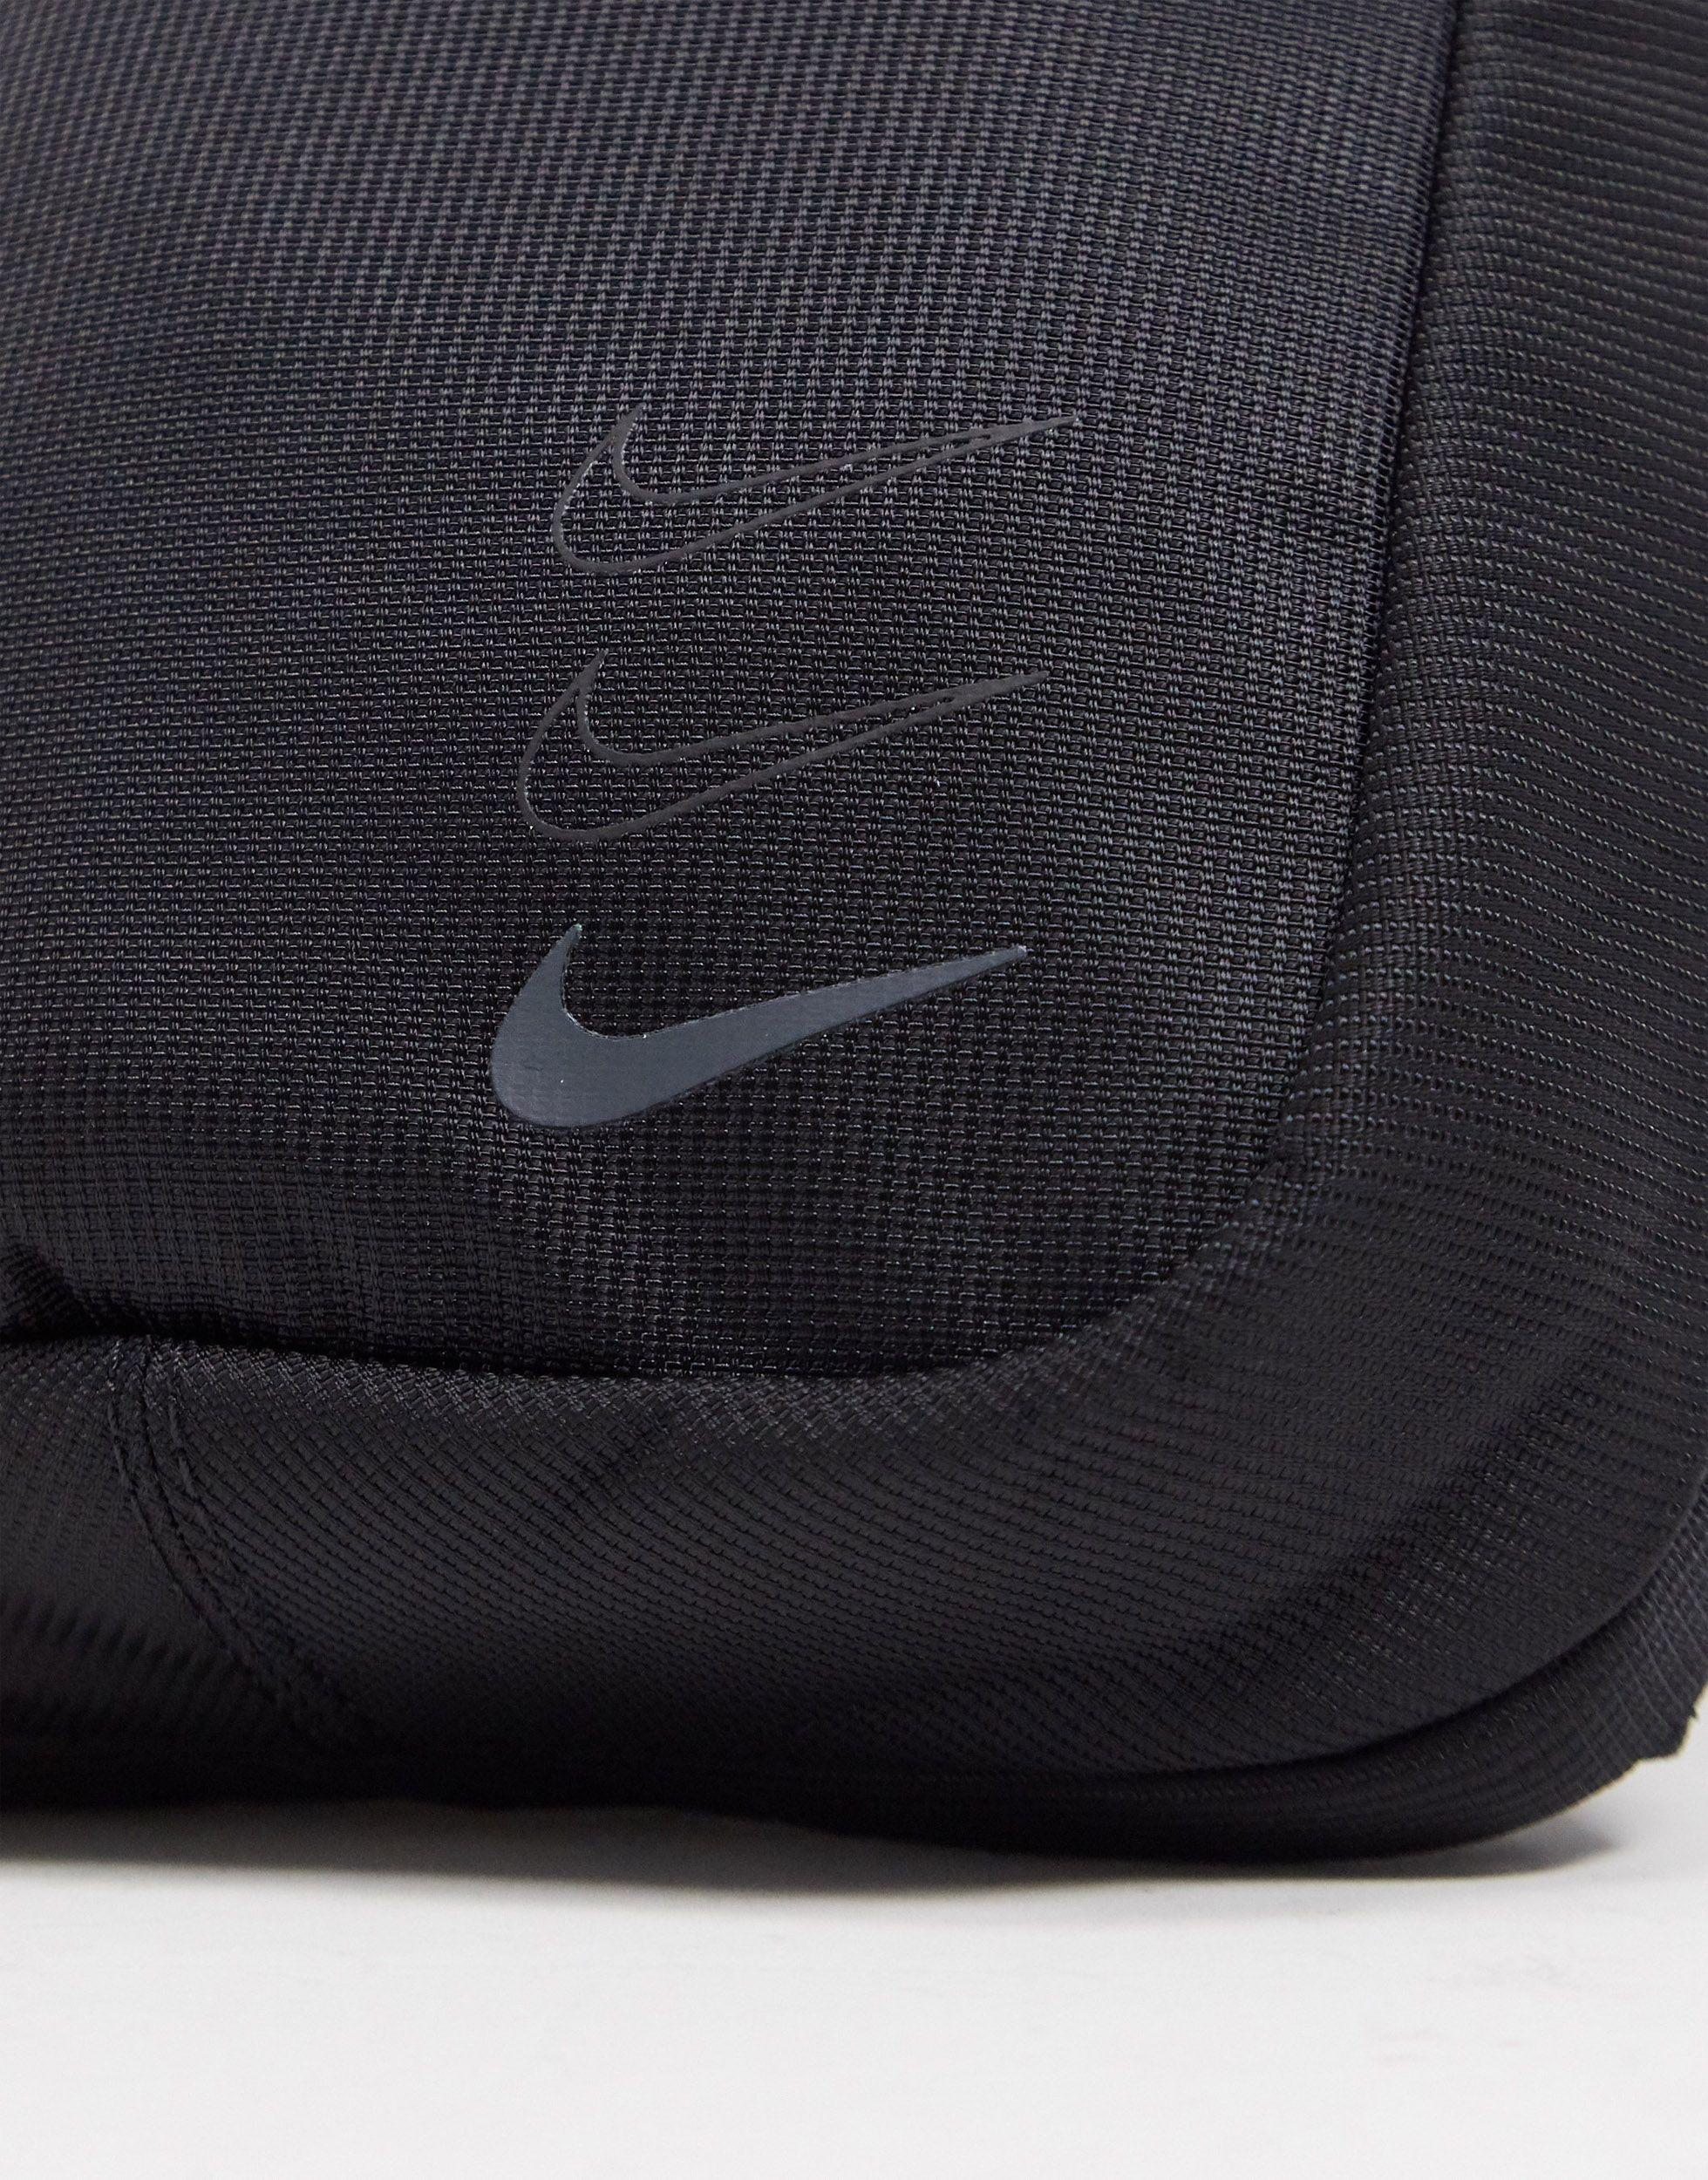 Nike Advance Crossbody Bag in Black for Men | Lyst